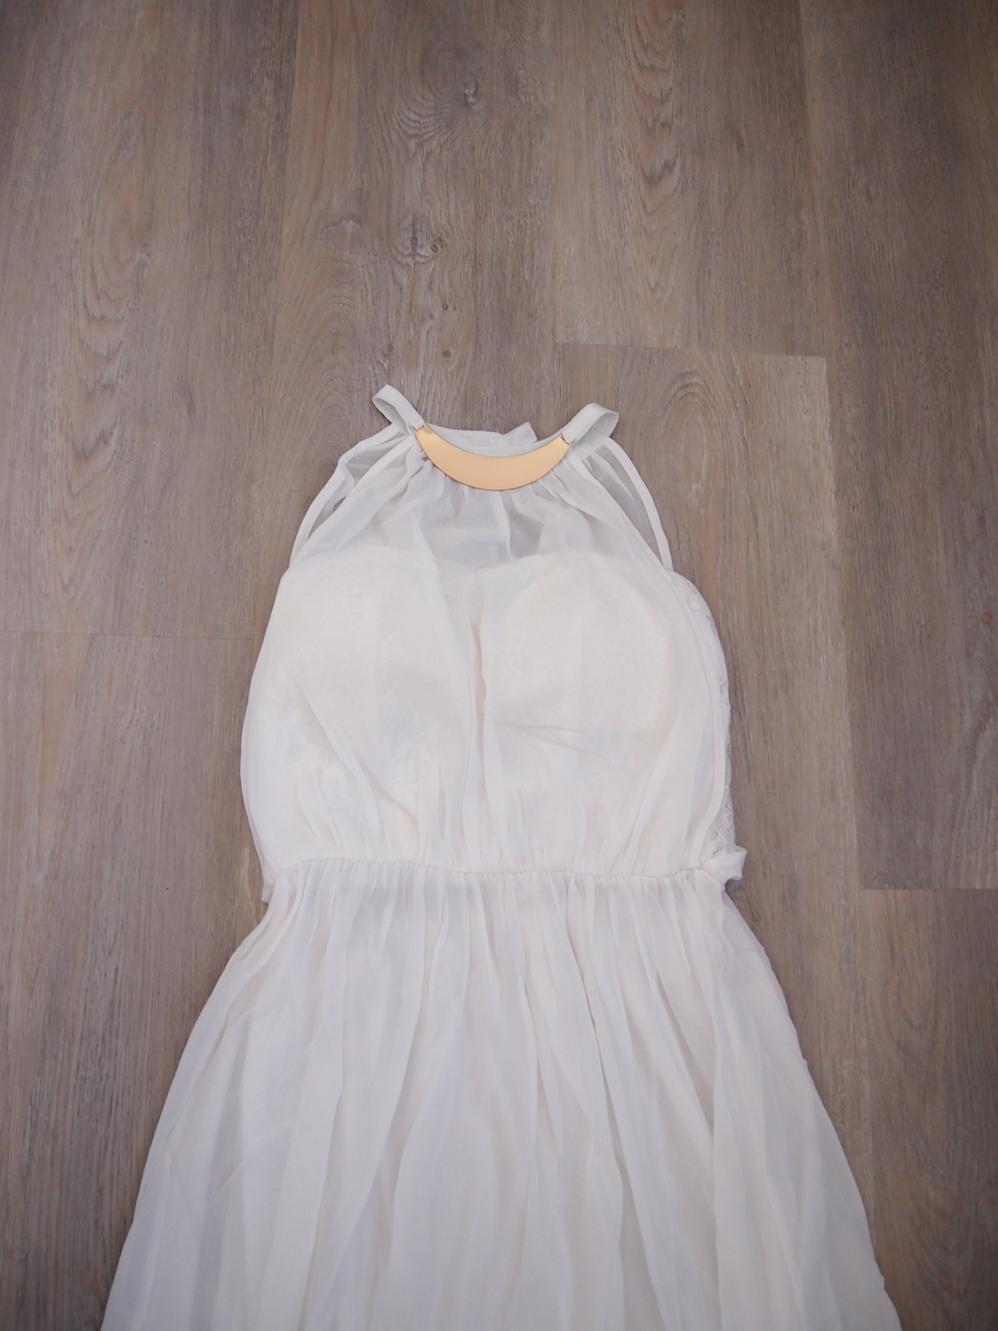 Bílé dlouhé svatební šaty - Obrázek č. 1